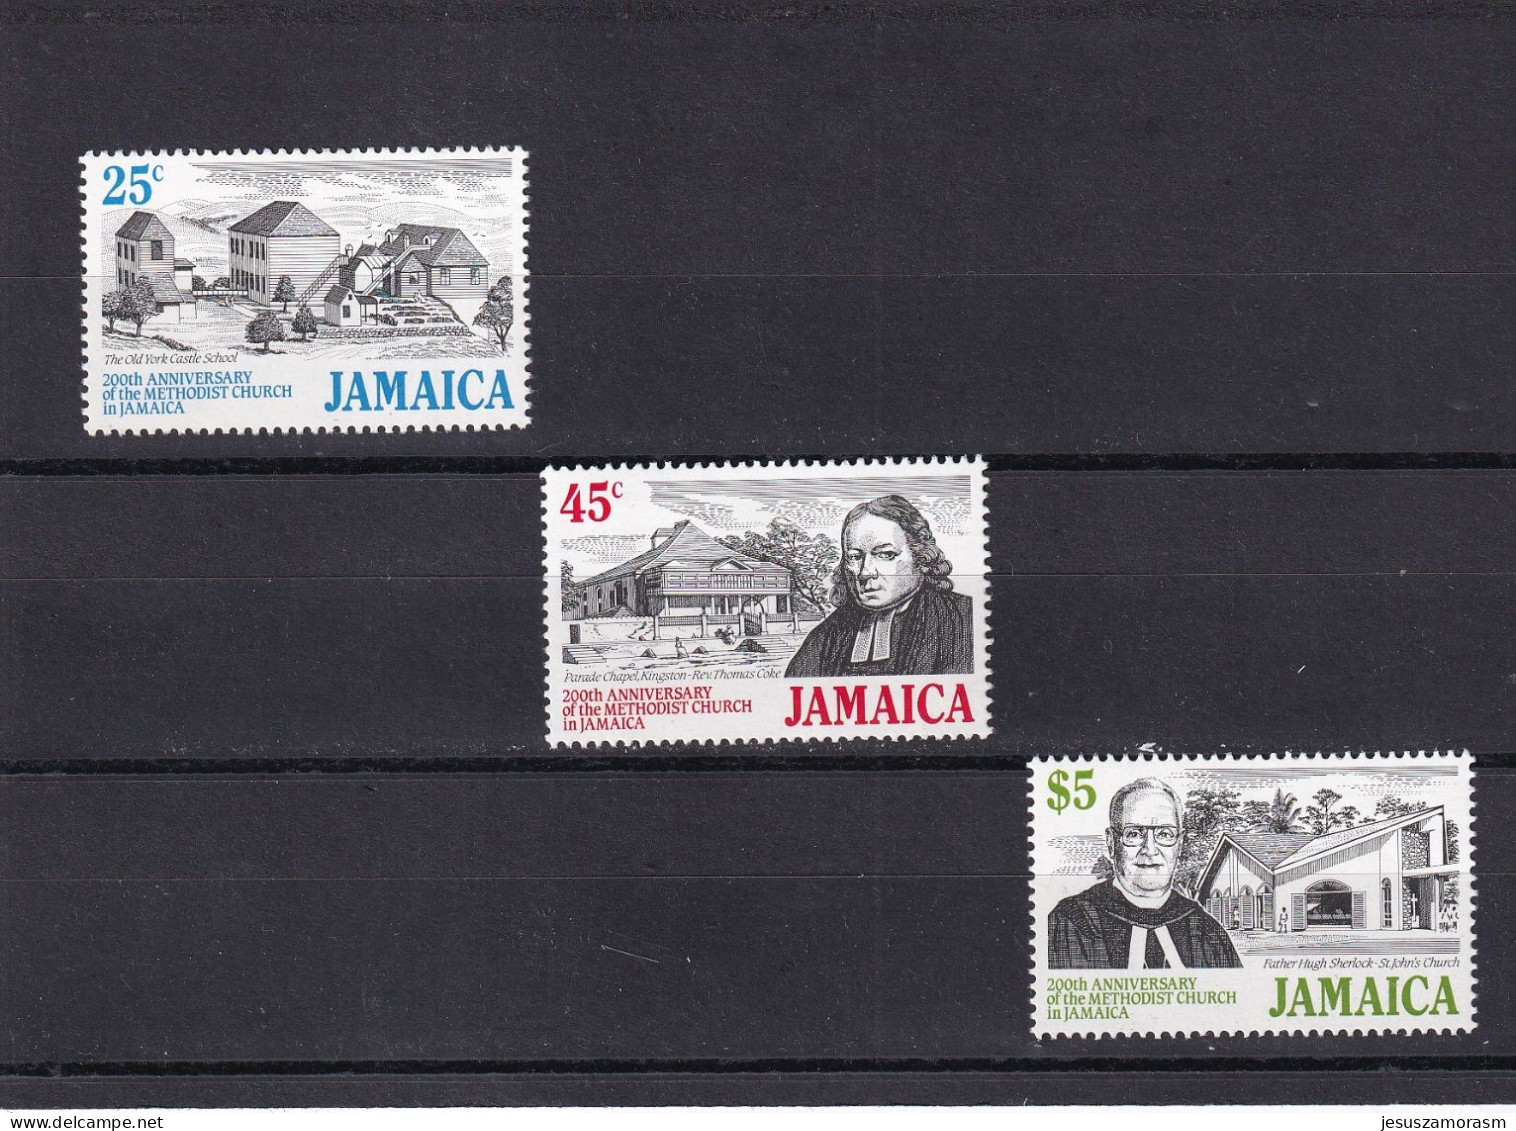 Jamaica Nº 740 Al 742 - Giamaica (1962-...)